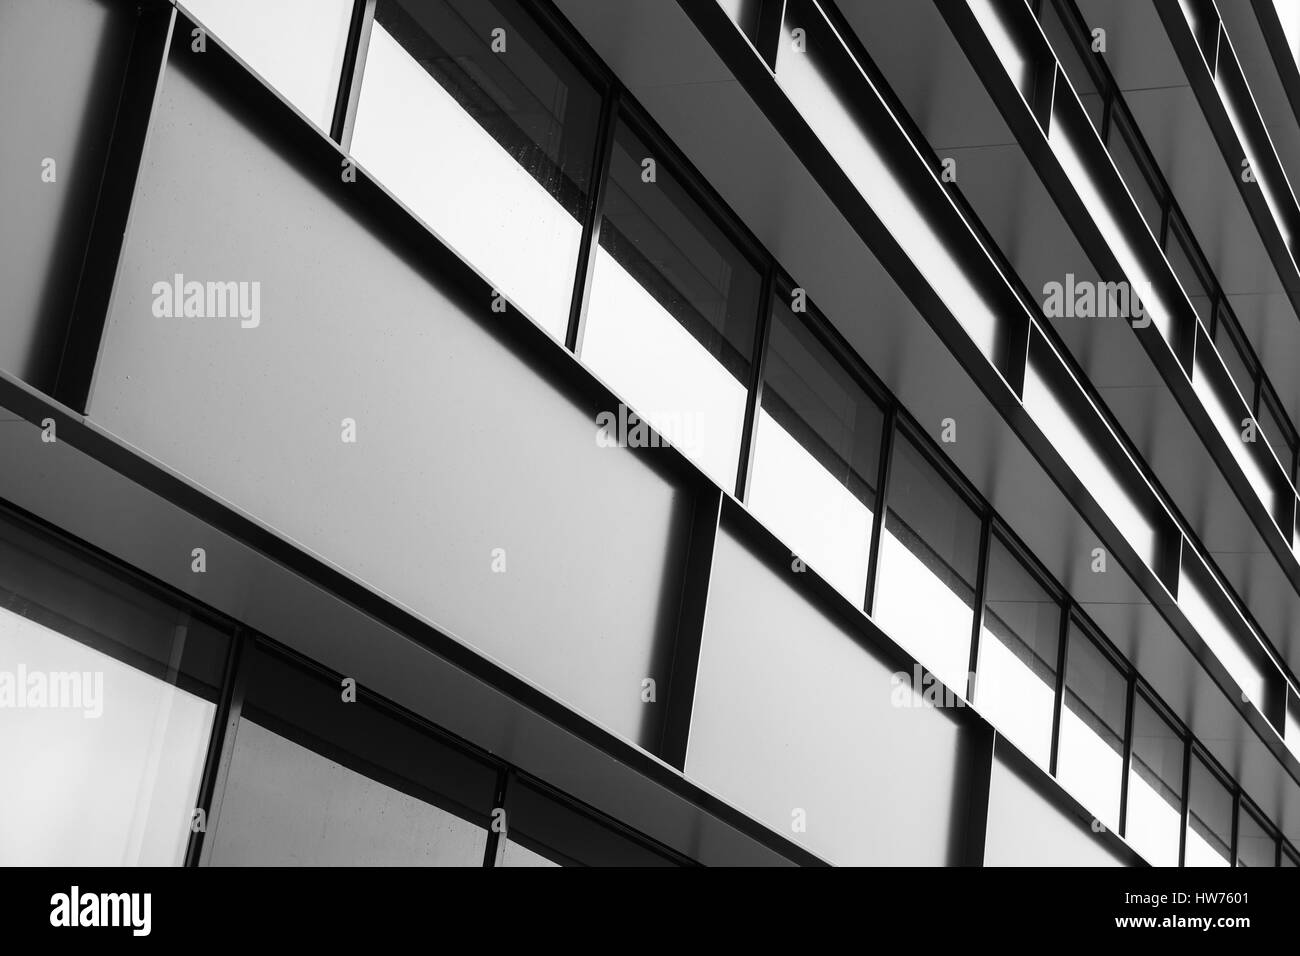 Façade d'un bâtiment industriel moderne résumé fragment, shiny windows en structure d'acier, noir et blanc Banque D'Images